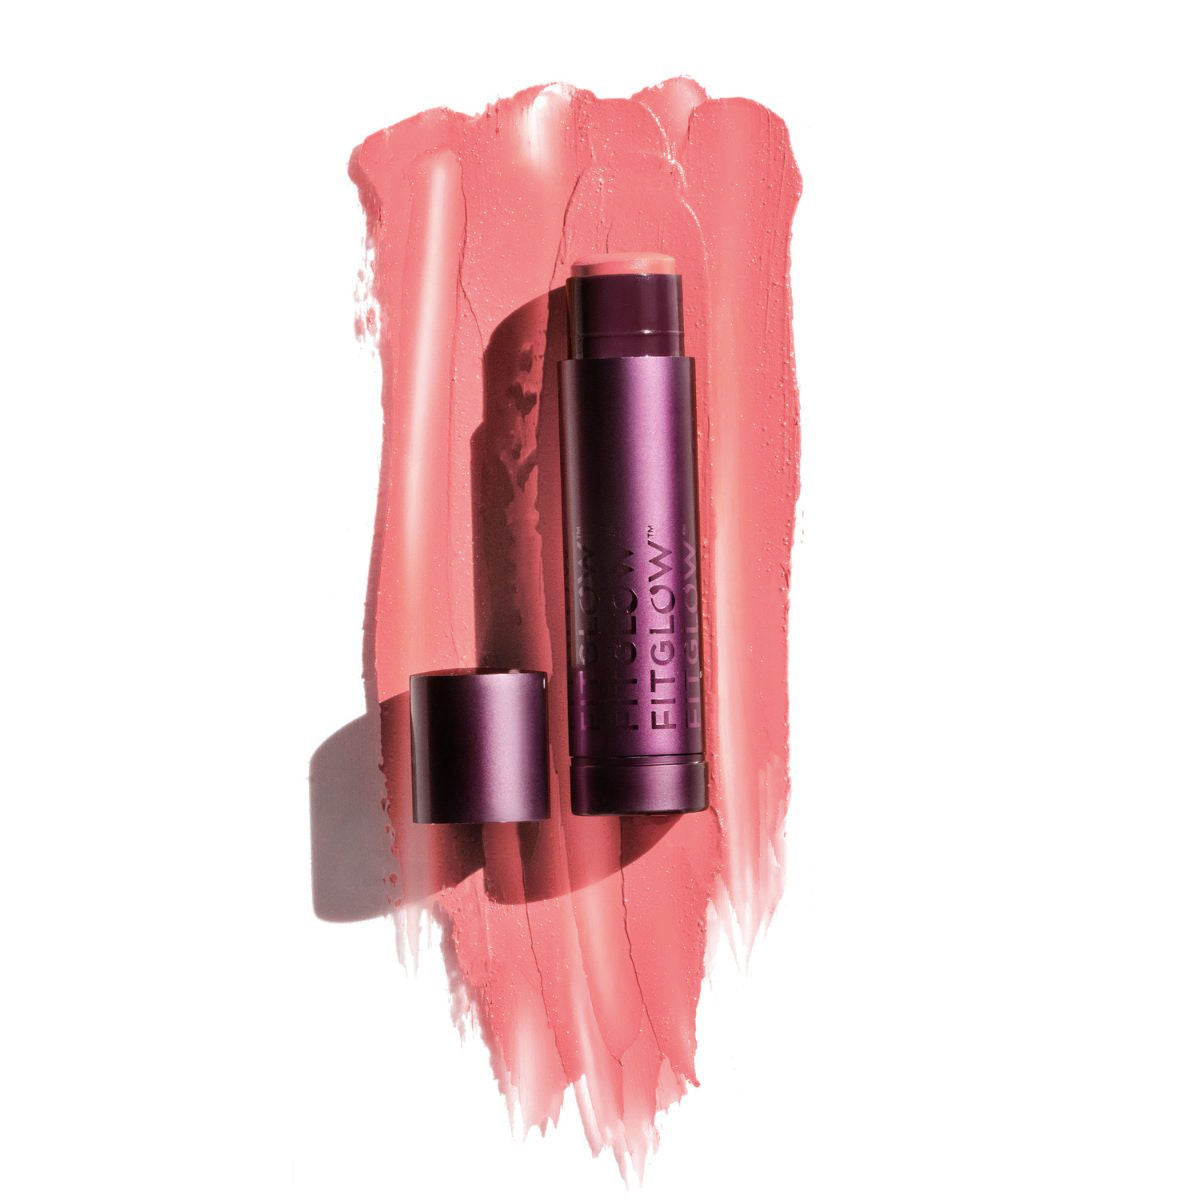 Fitglow Beauty Cloud Collagen Lipstick Matte Balm